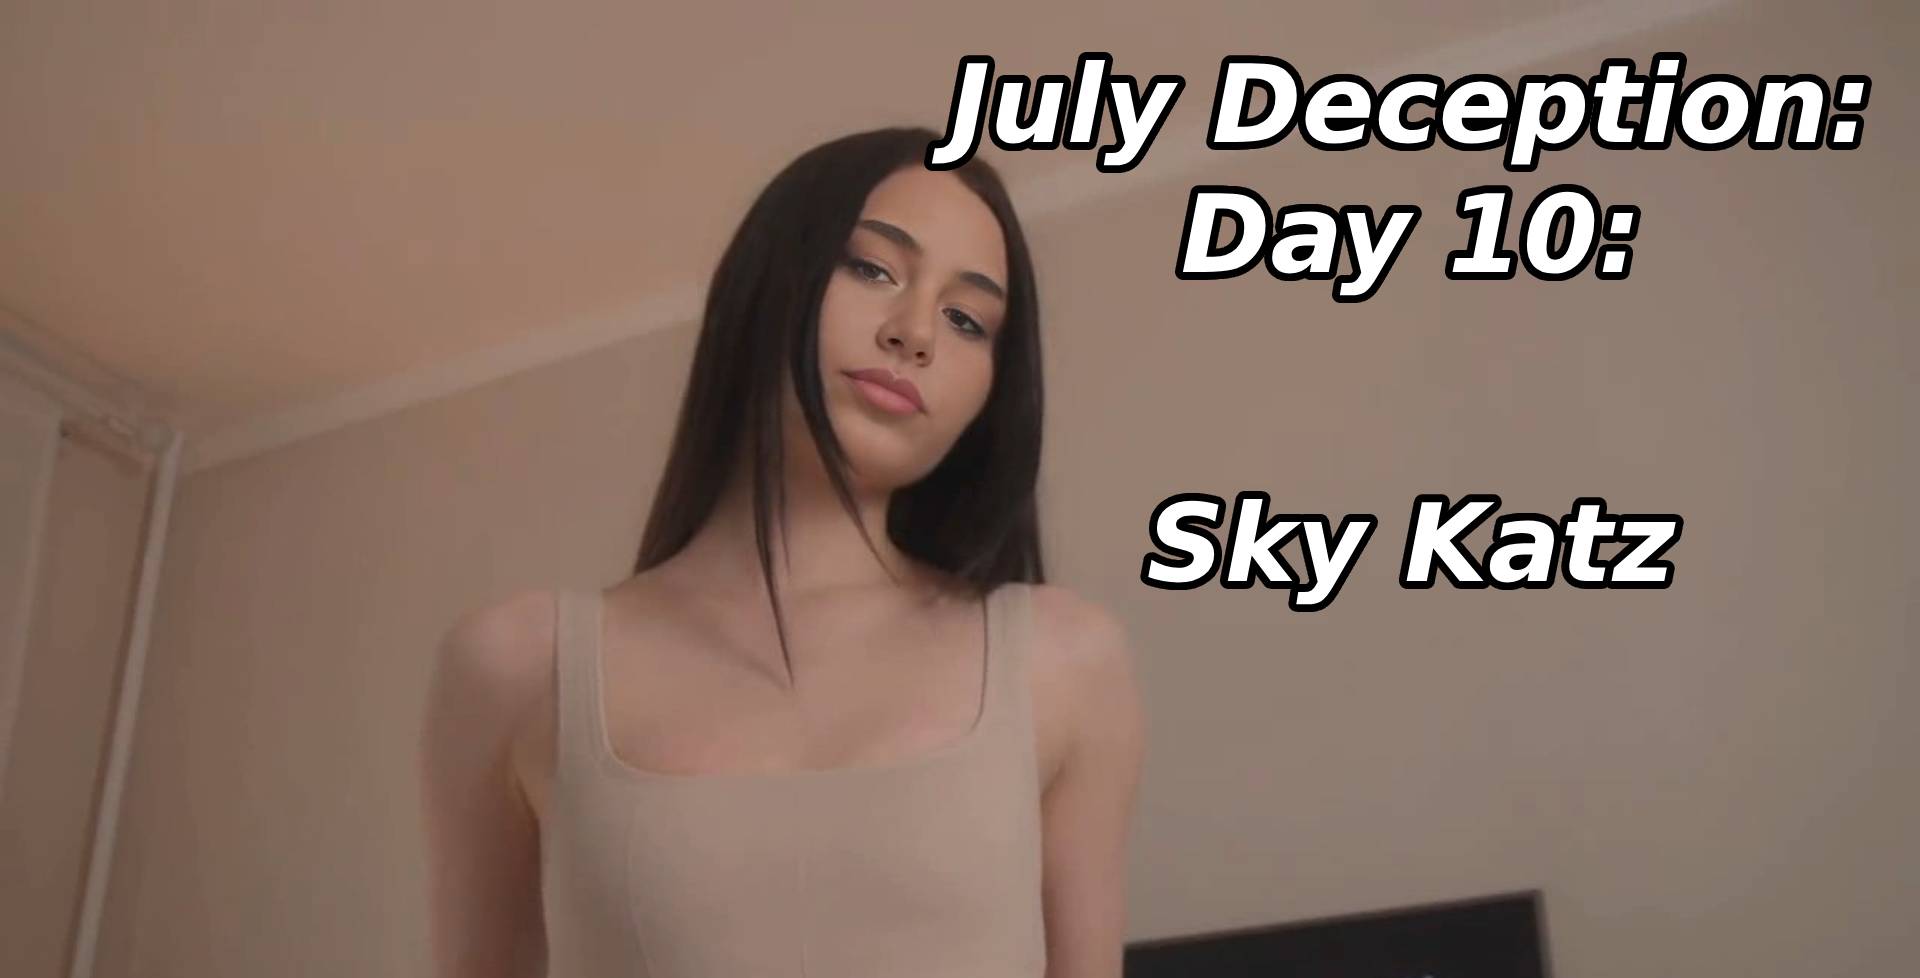 CrticalFakes Presents July Deception: Day 10: Sky Katz